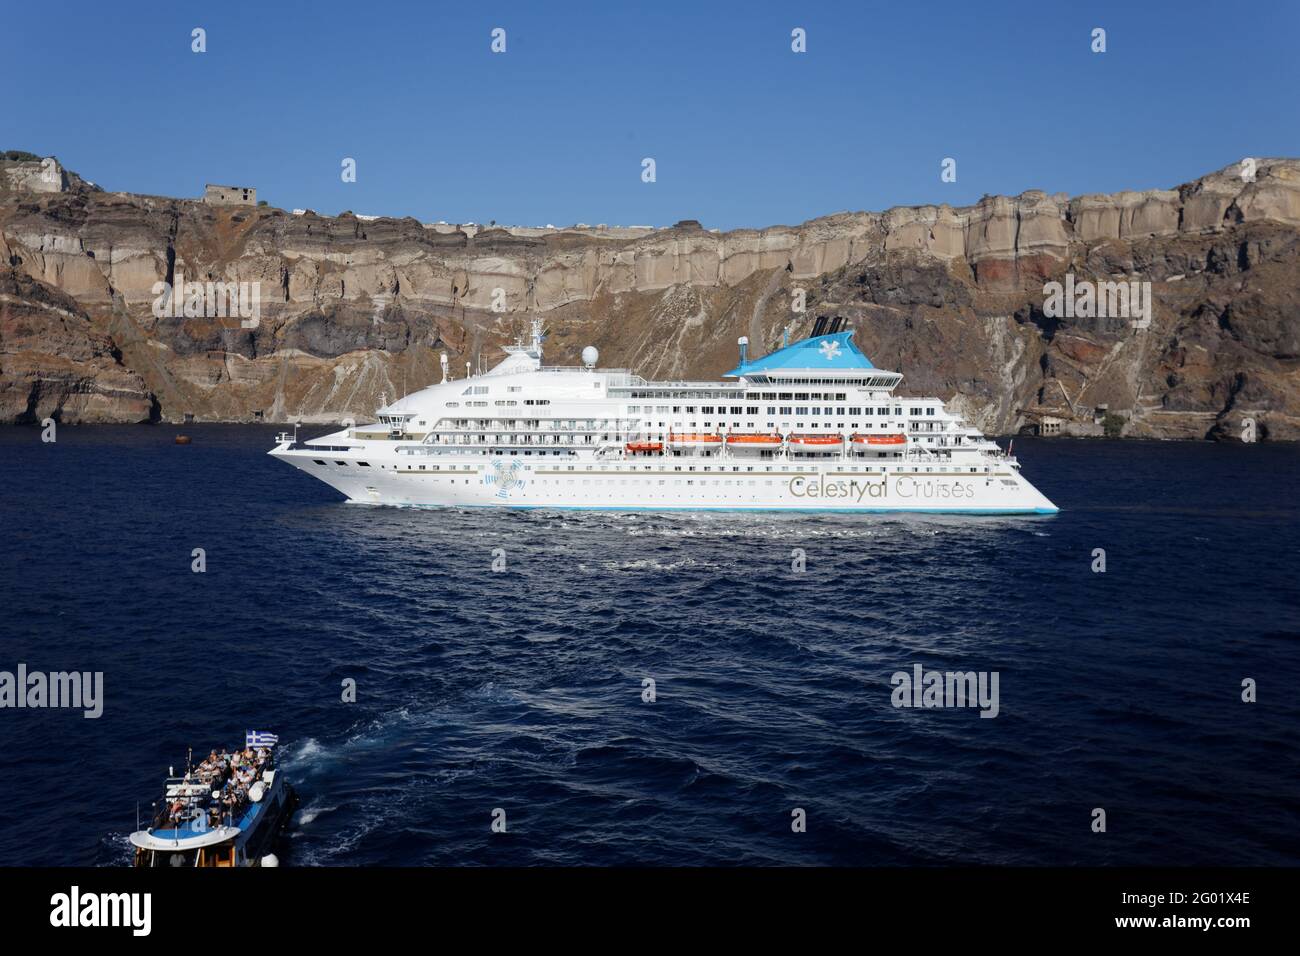 Santorini - Celestyal Crystal Stock Photo